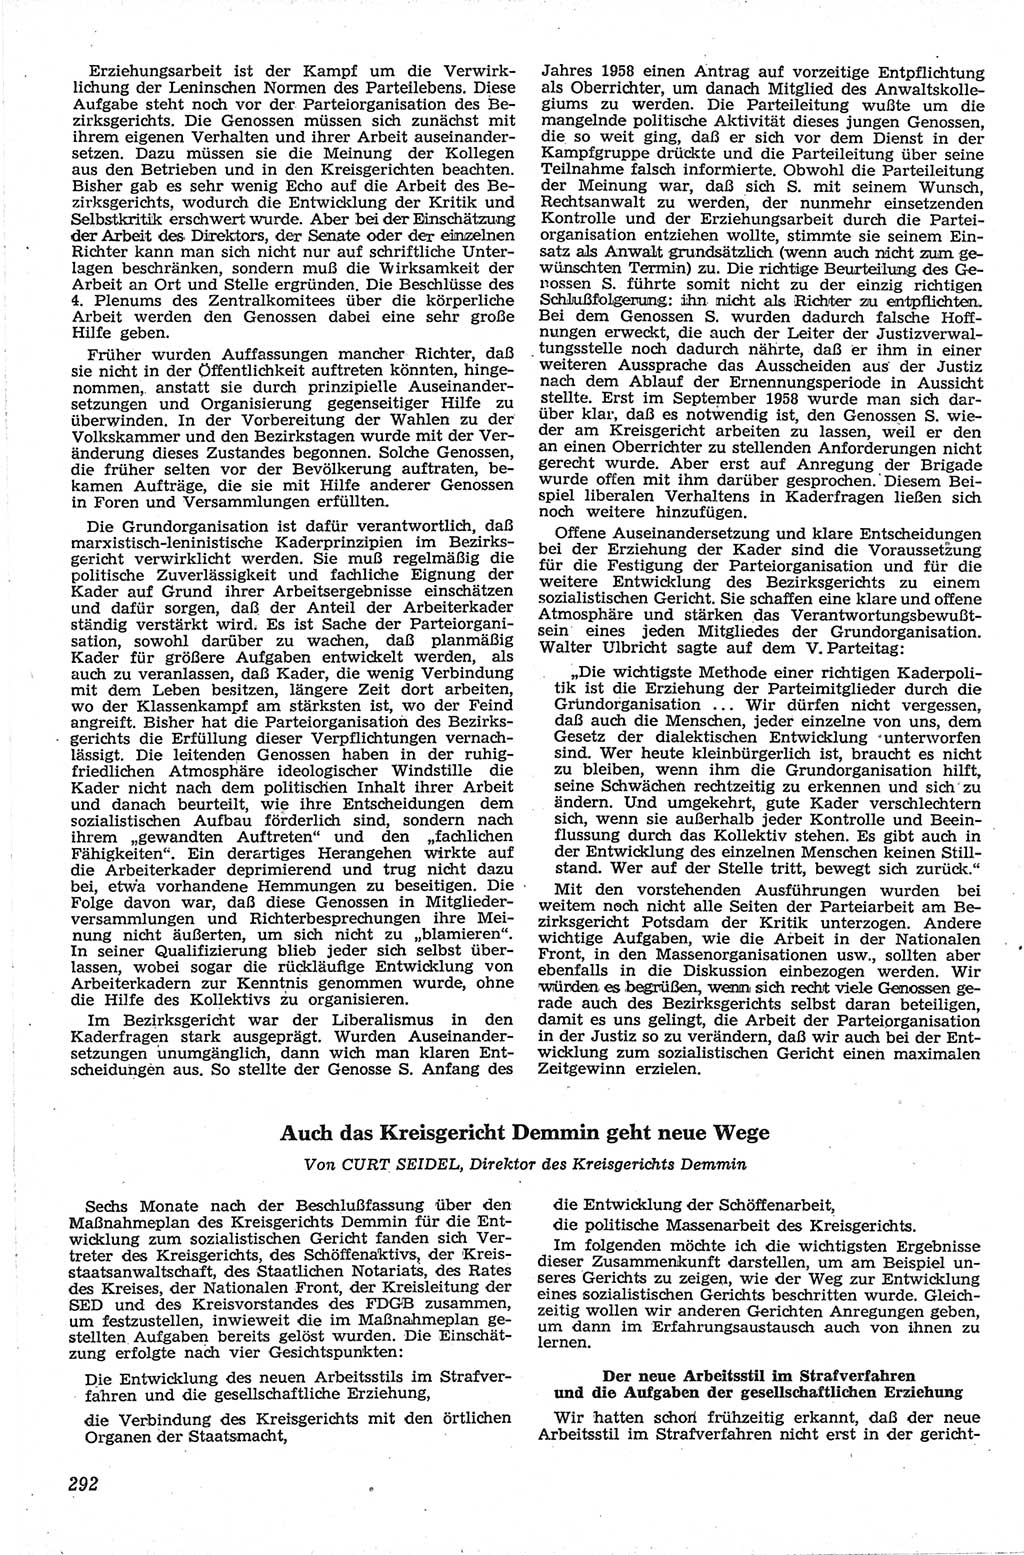 Neue Justiz (NJ), Zeitschrift für Recht und Rechtswissenschaft [Deutsche Demokratische Republik (DDR)], 13. Jahrgang 1959, Seite 292 (NJ DDR 1959, S. 292)